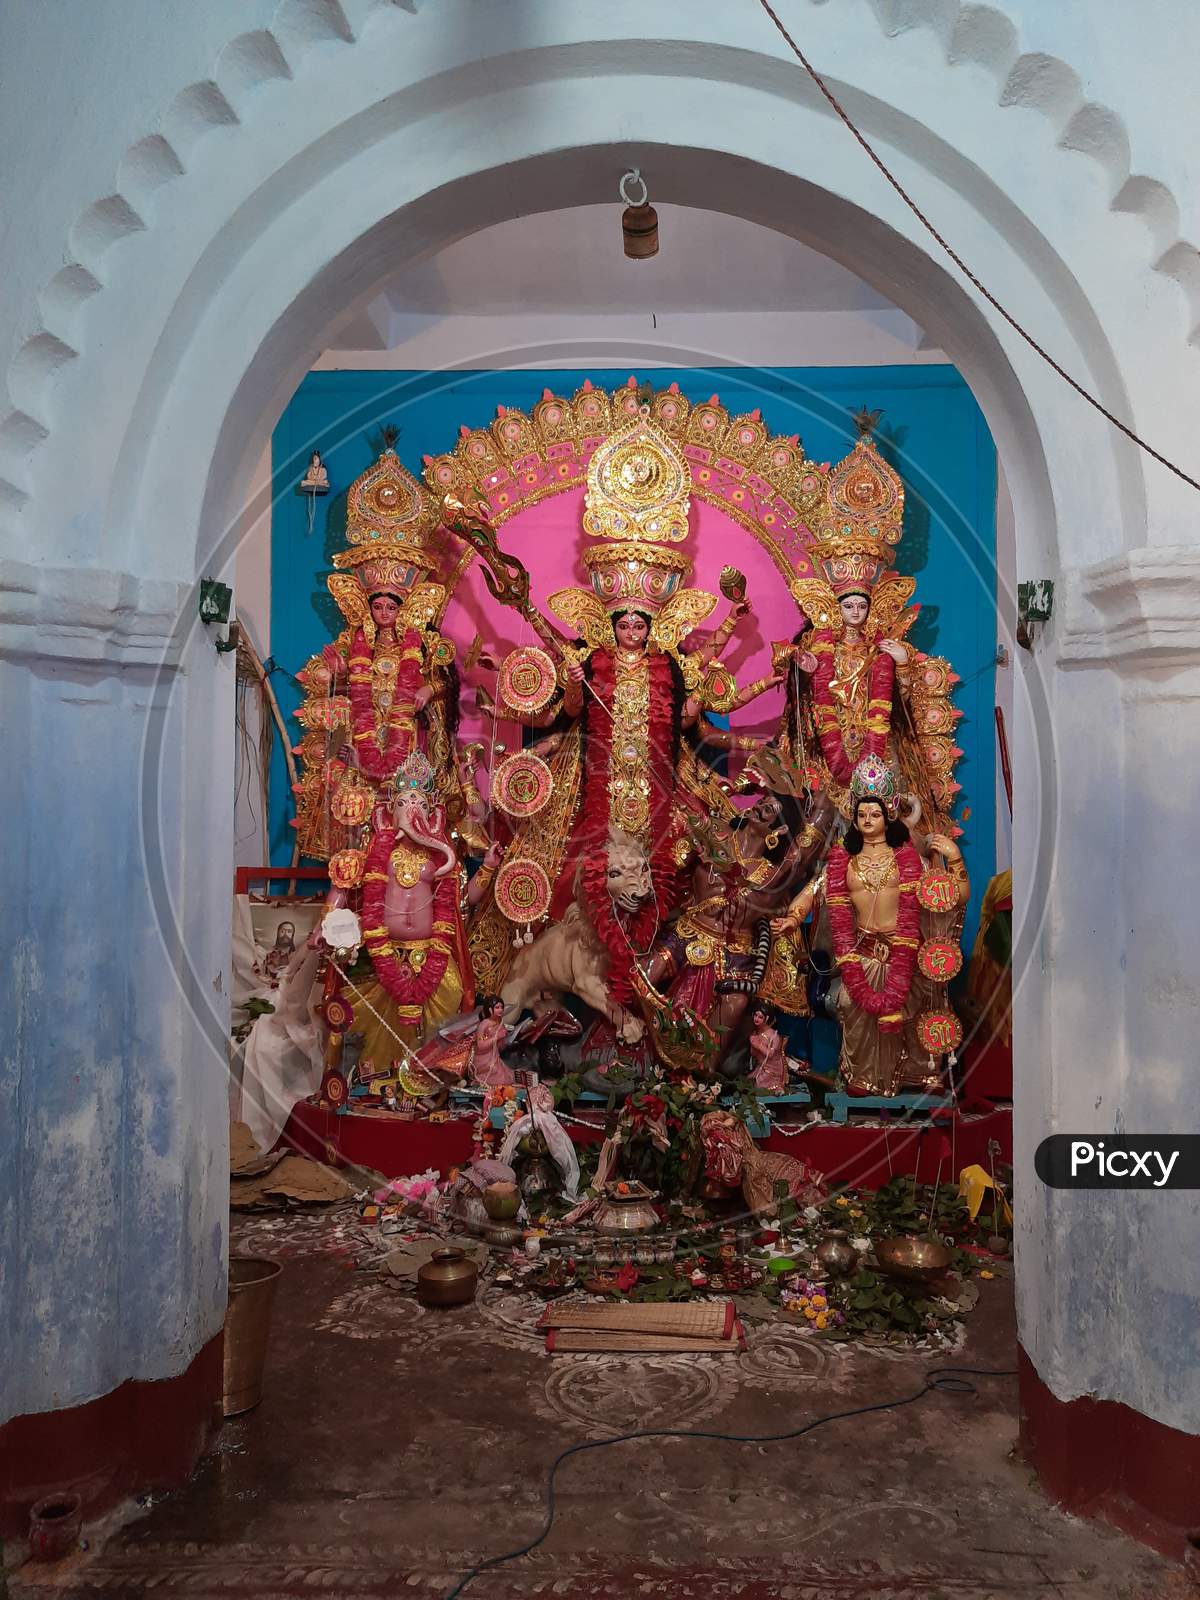 Joy Maa Durga